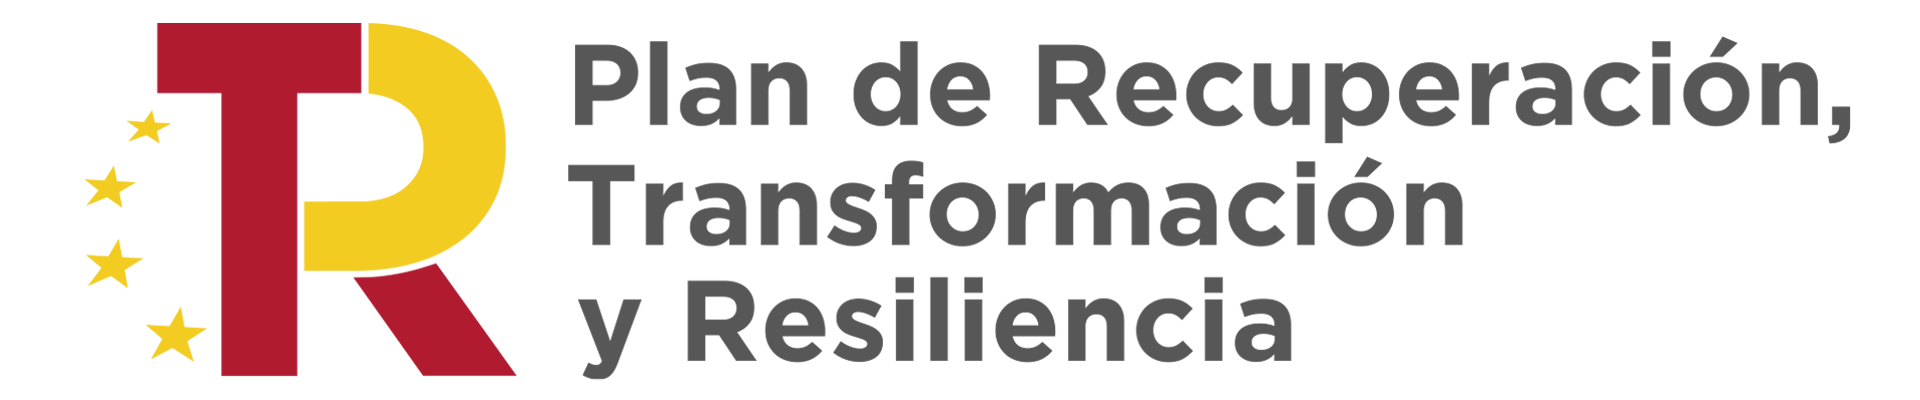 Logo Plan de Recuperacion, transformacion y resiliencia